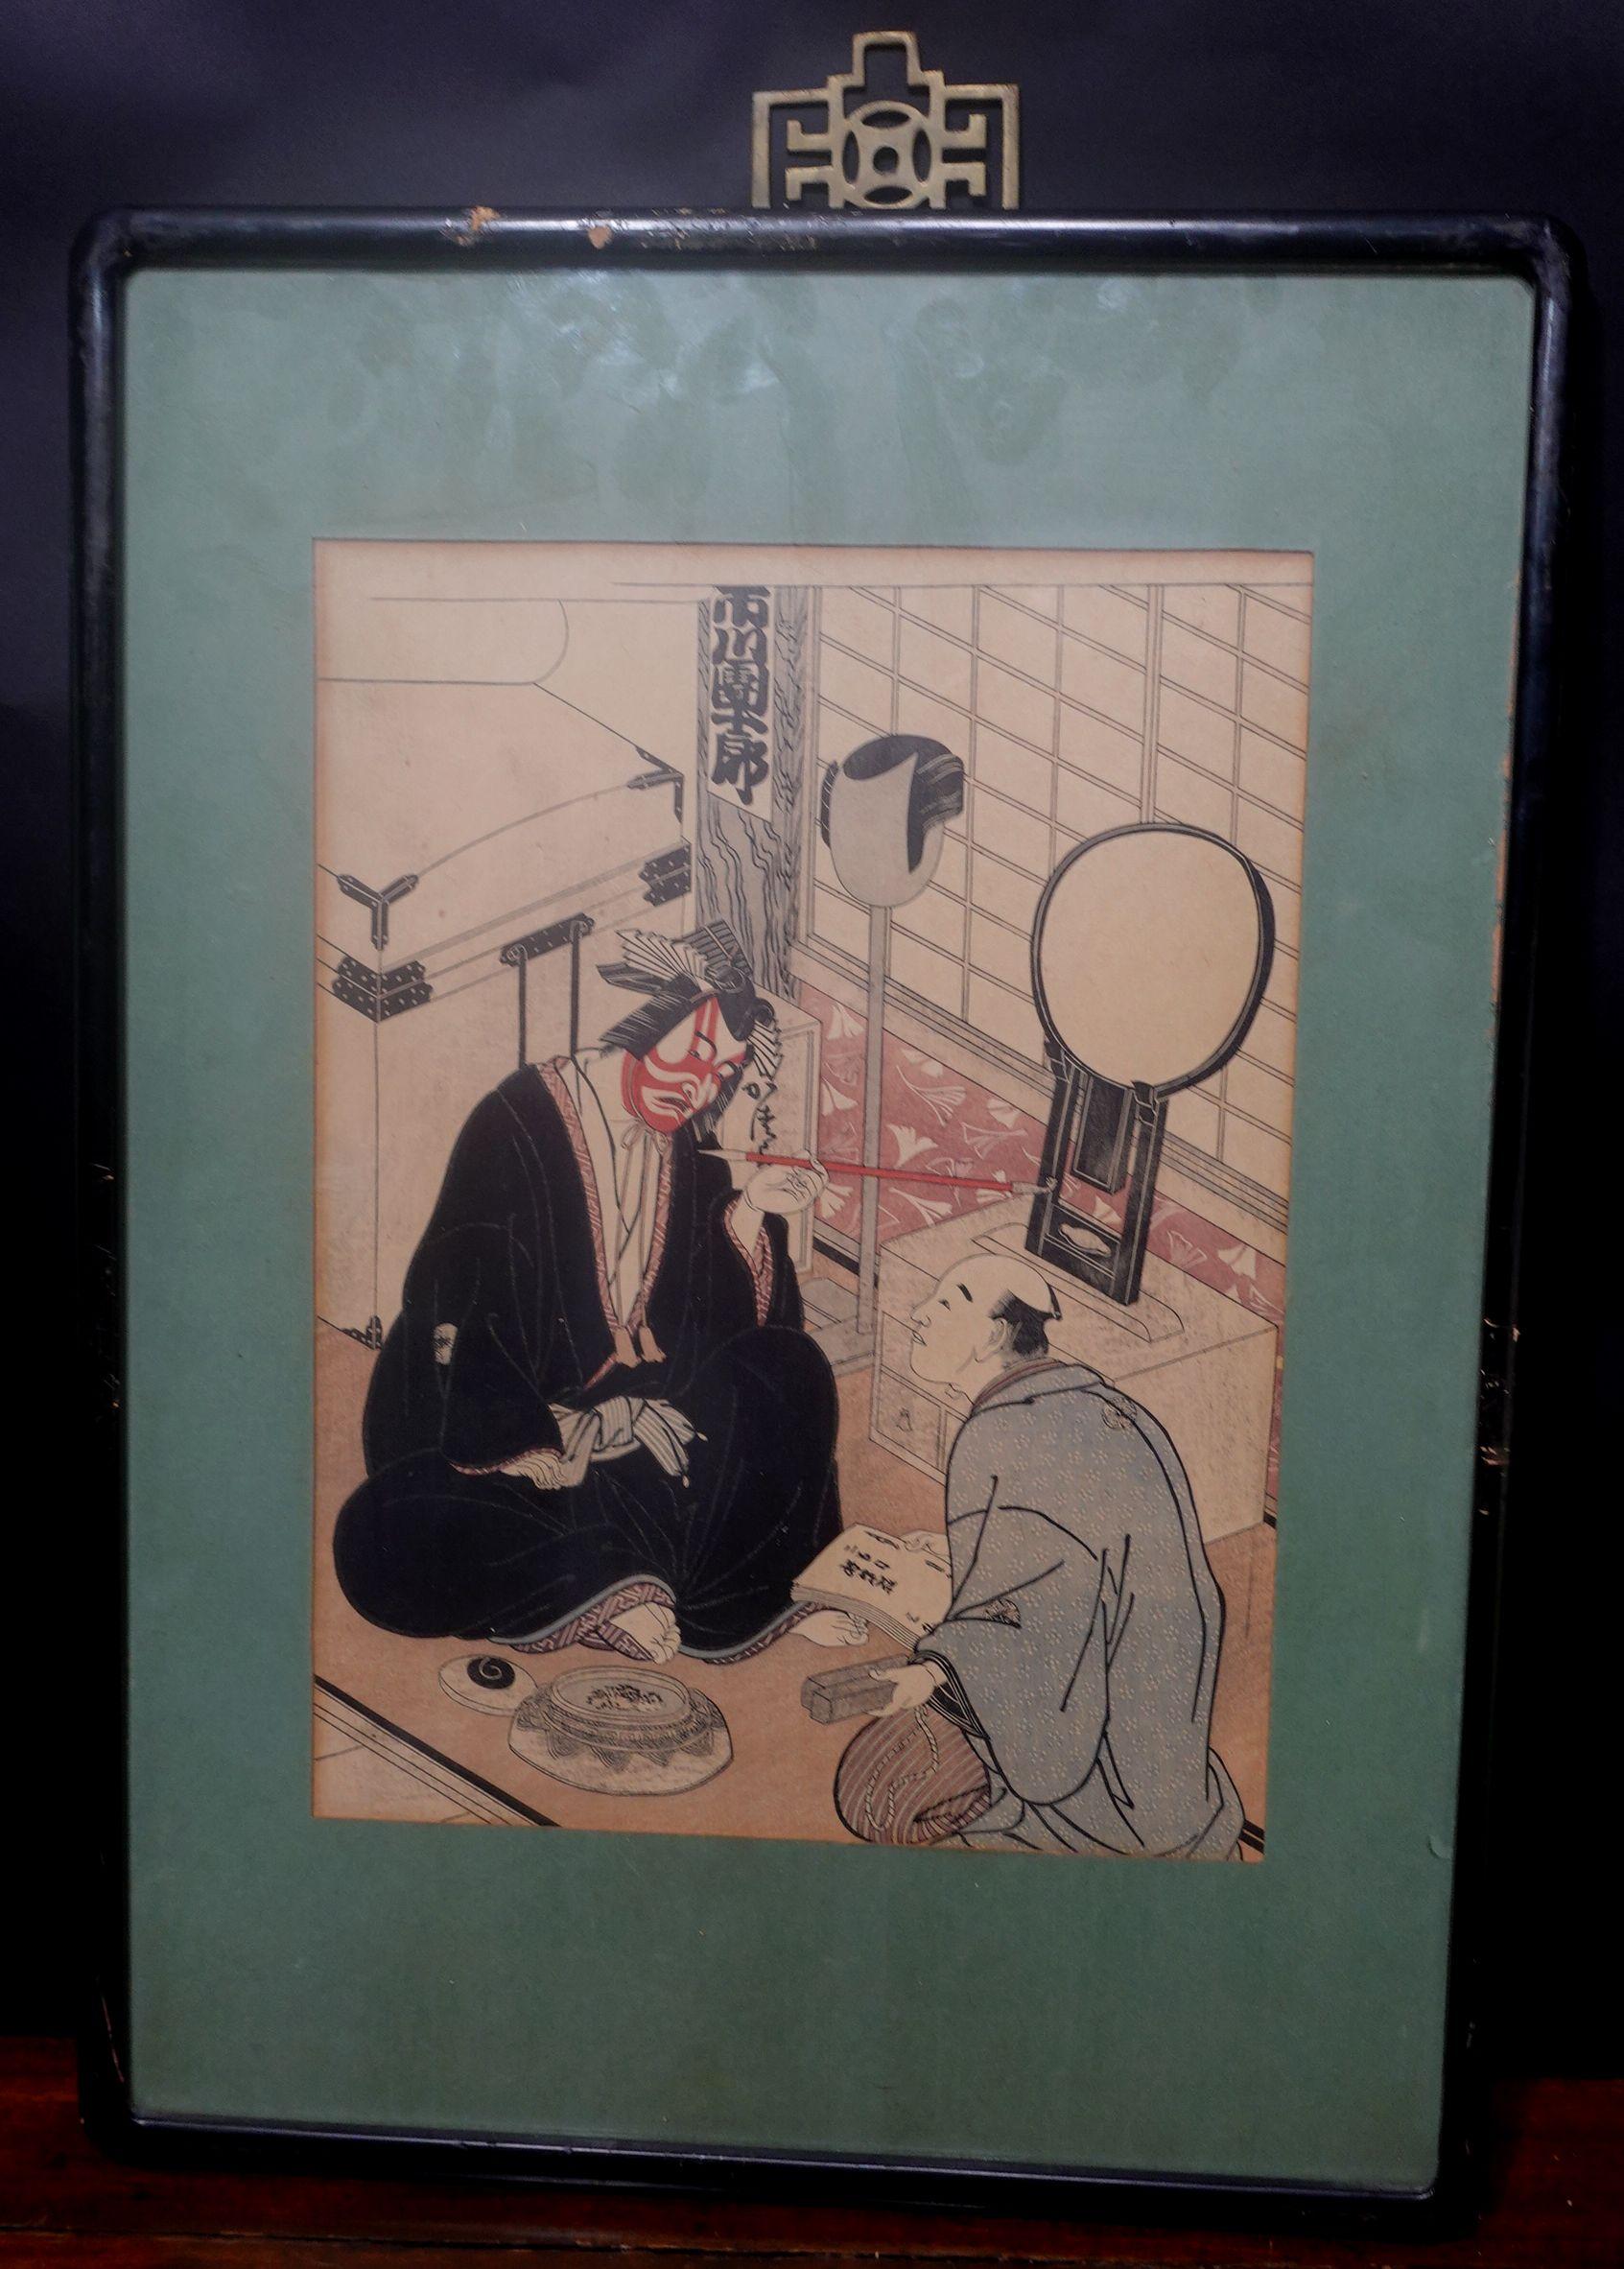 Katsukawa Shunsho, 勝川春章
Dieser Holzschnitt wurde 1947 vom Imperial Household Museum veröffentlicht,
Der Schauspieler Ichikawa Danjuro ? im Green Room bei der Beratung mit dem Drehbuchautor
13